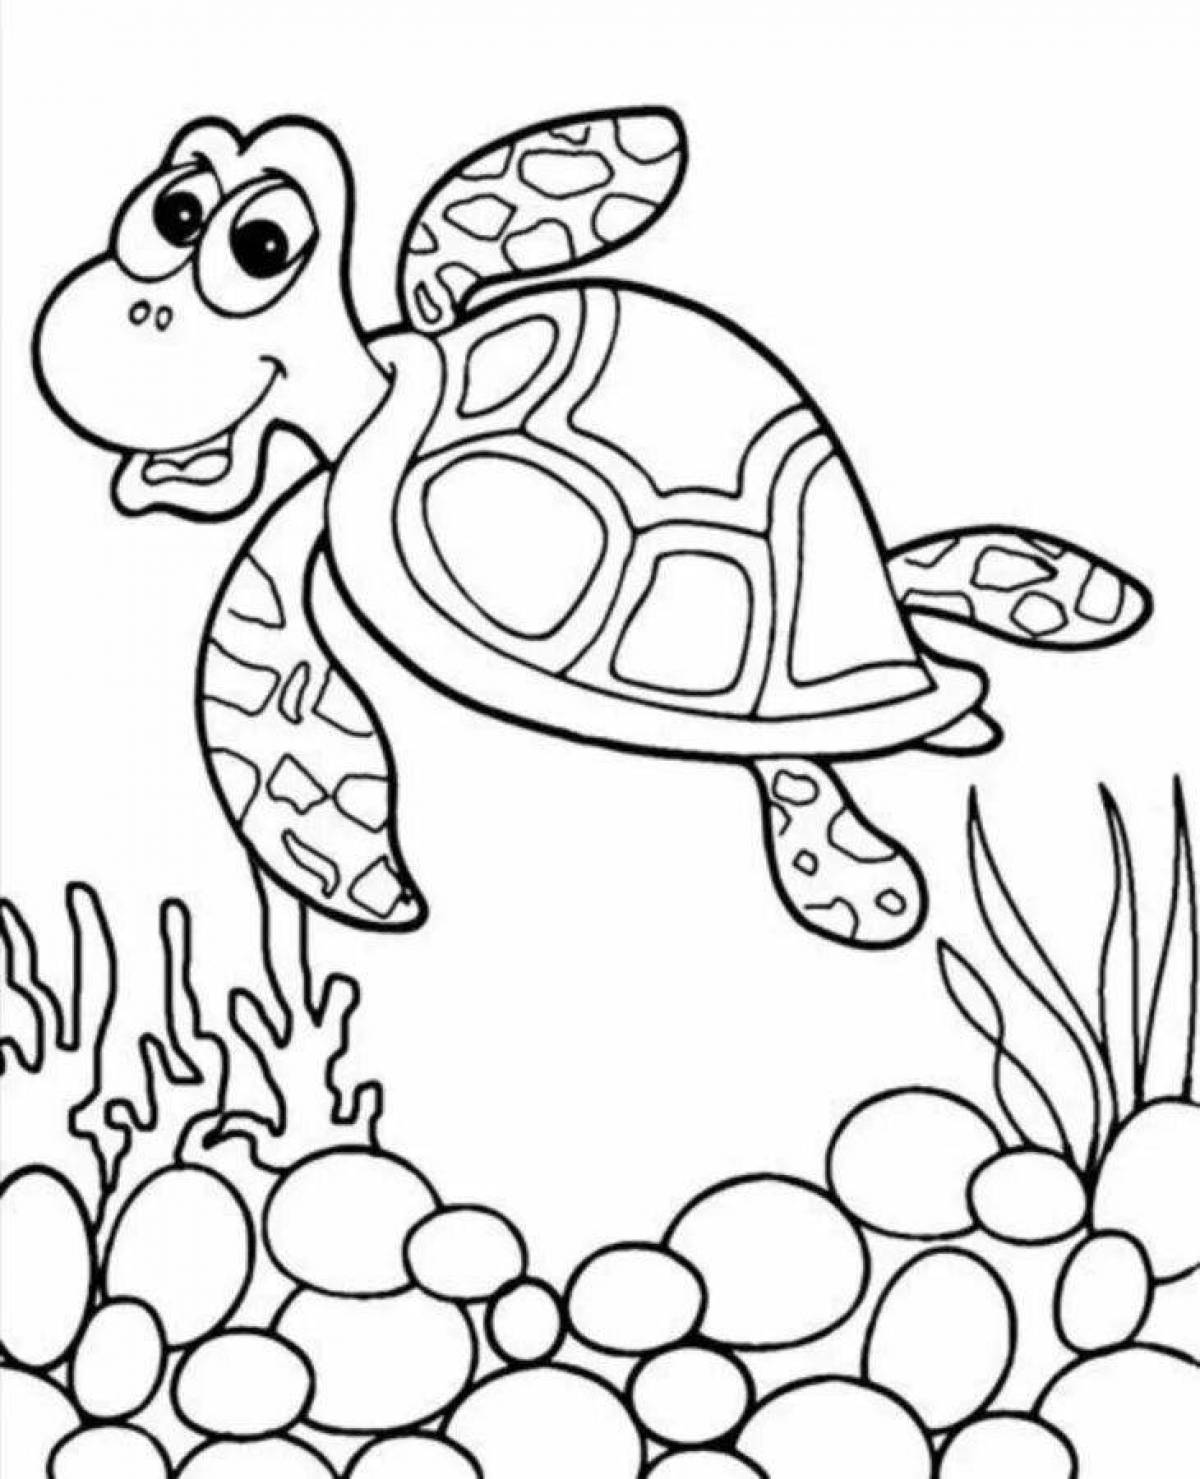 Цветная черепаха-раскраска для детей